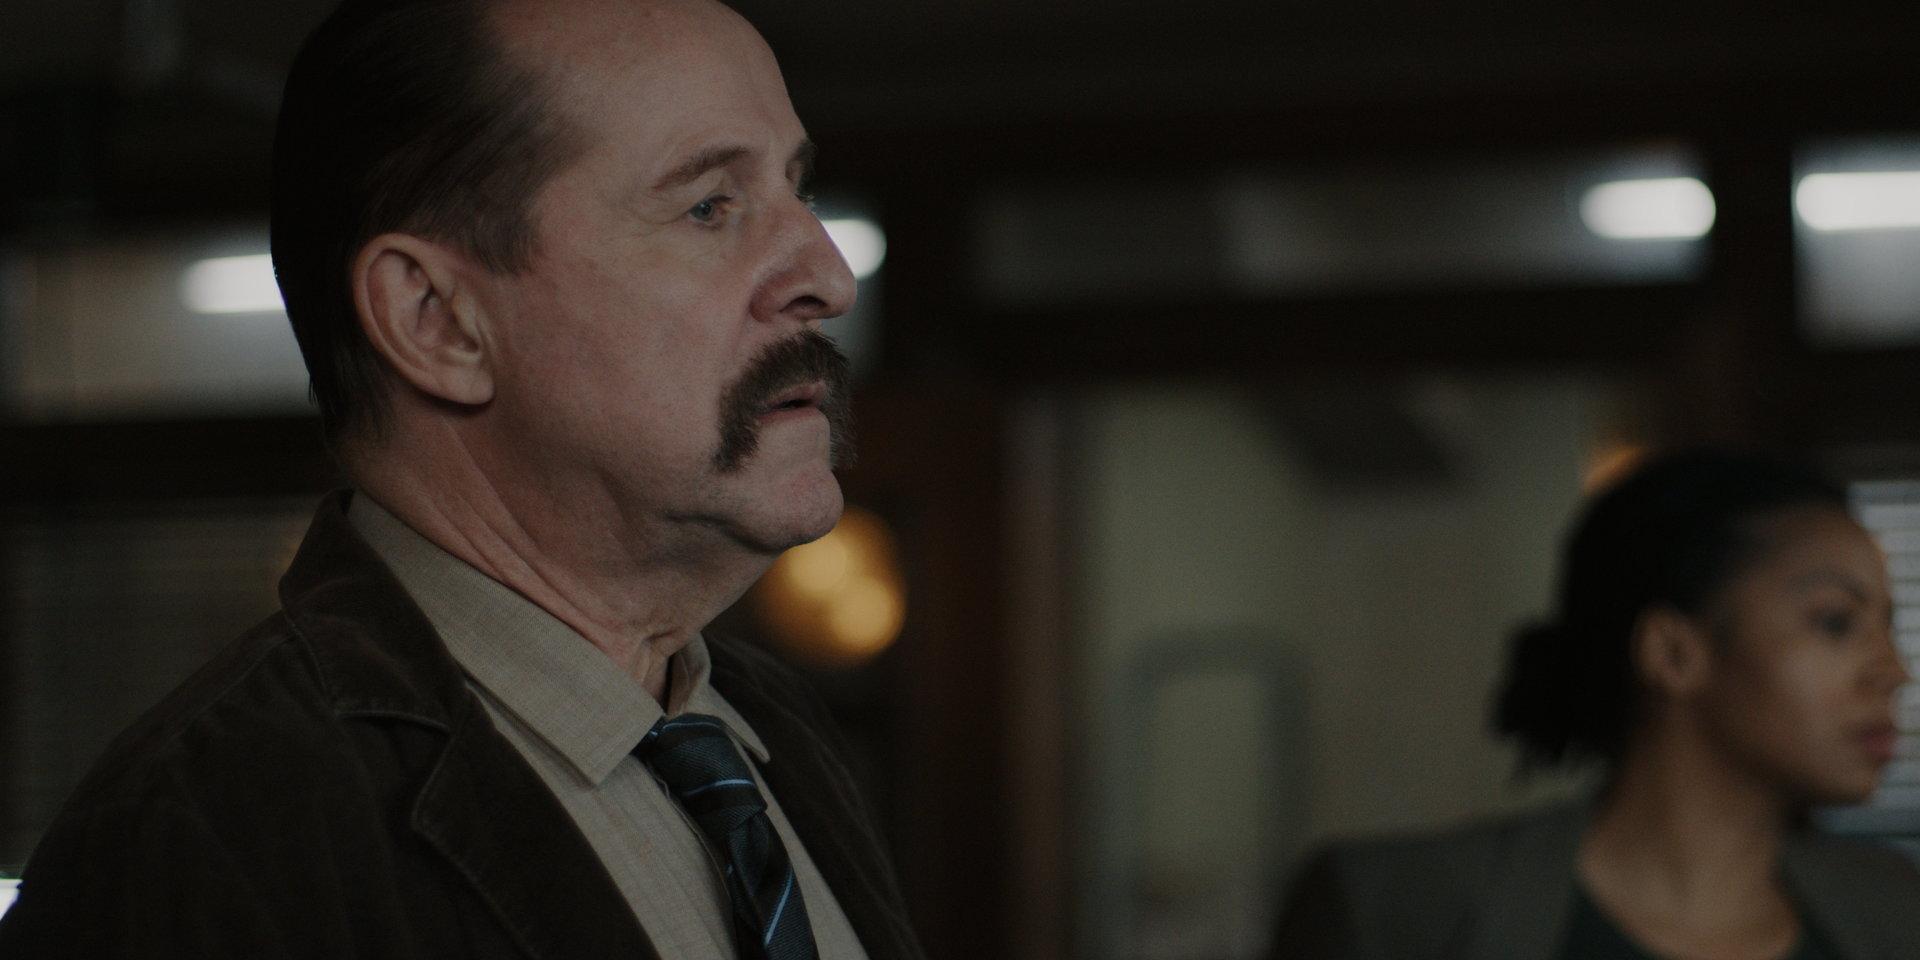 I 'The box' spelar Peter Stormare en livstrött polischef. Pressbild.